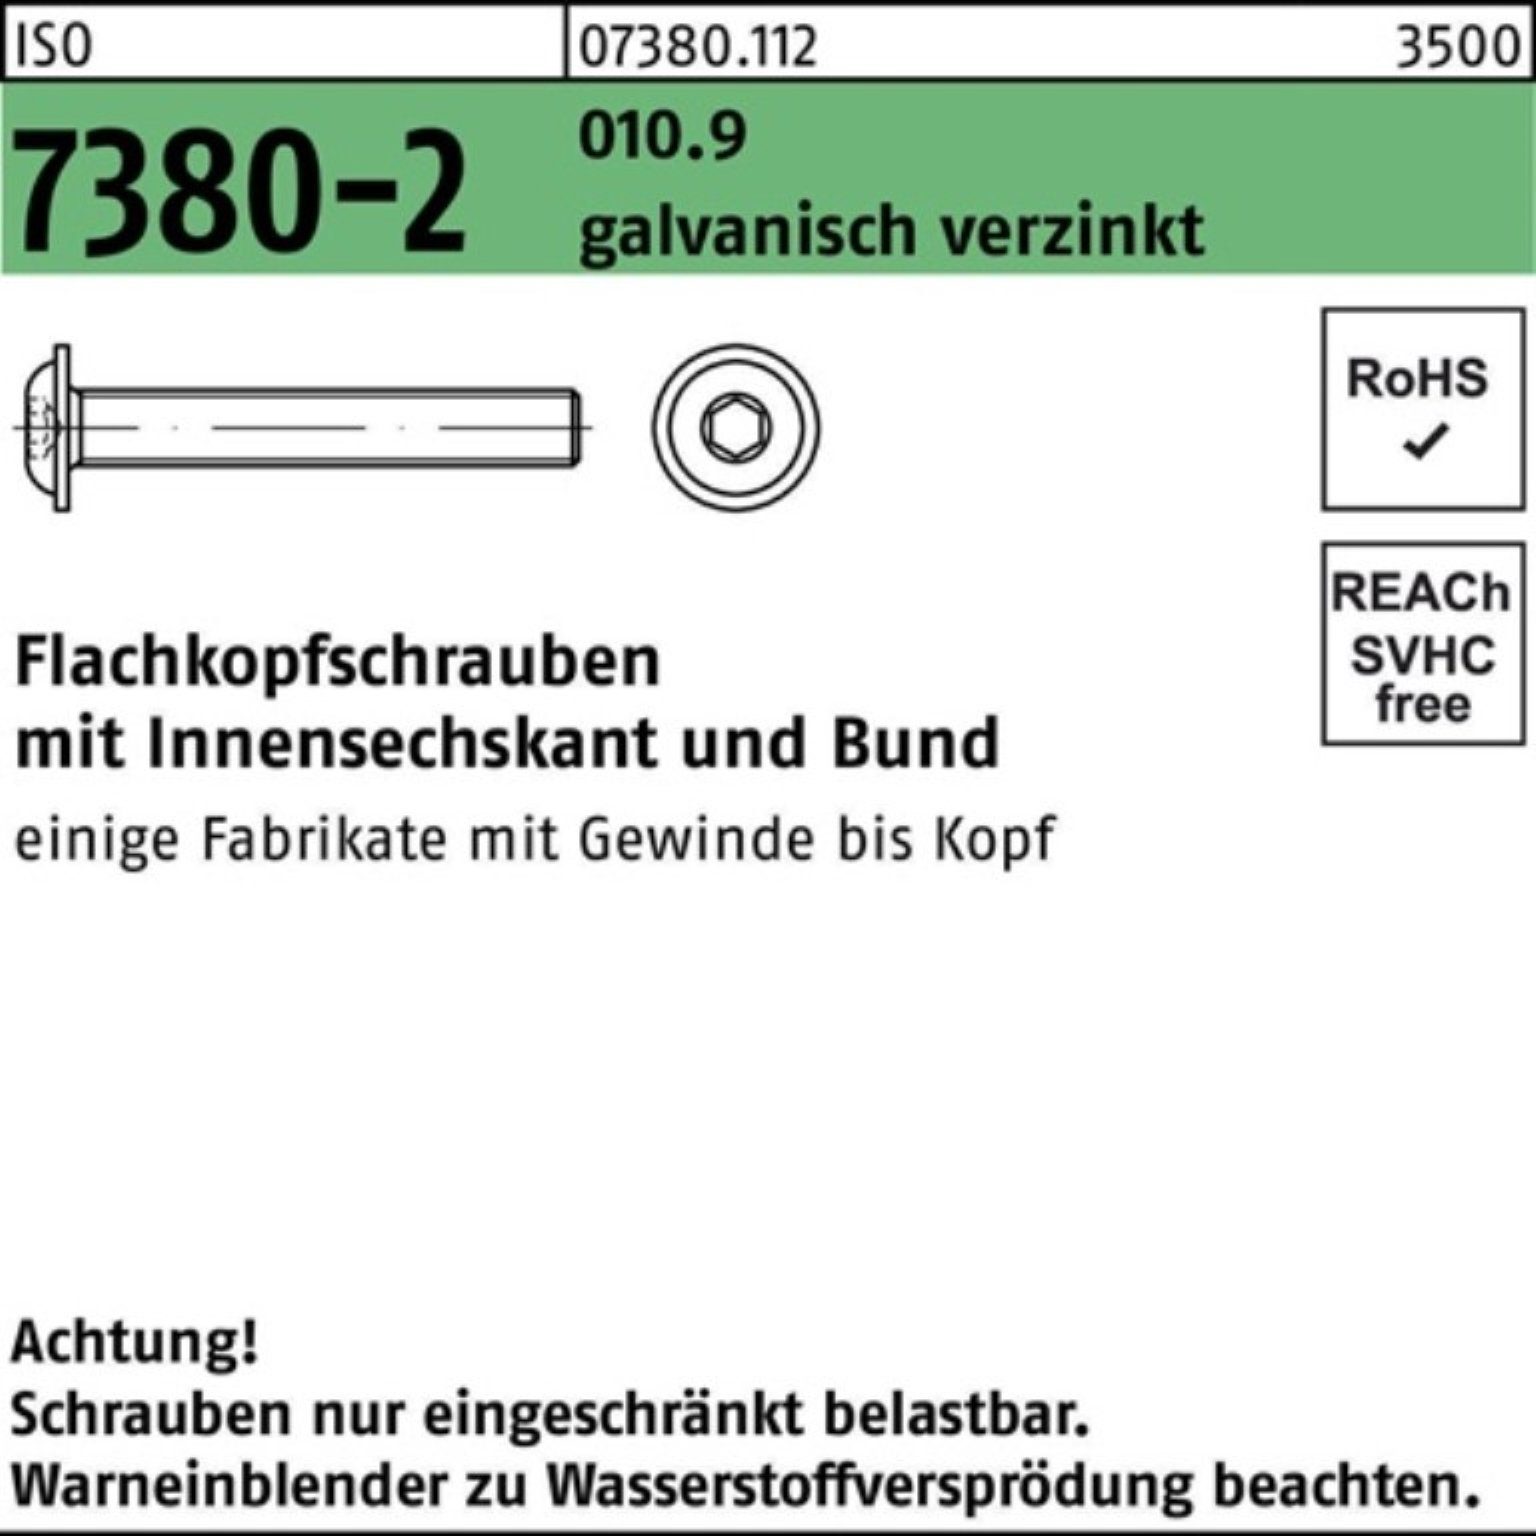 Reyher Schraube 100er Pack Flachkopfschraube ISO 7380-2 Bund/Innen-6kt M10x35 010.9 ga